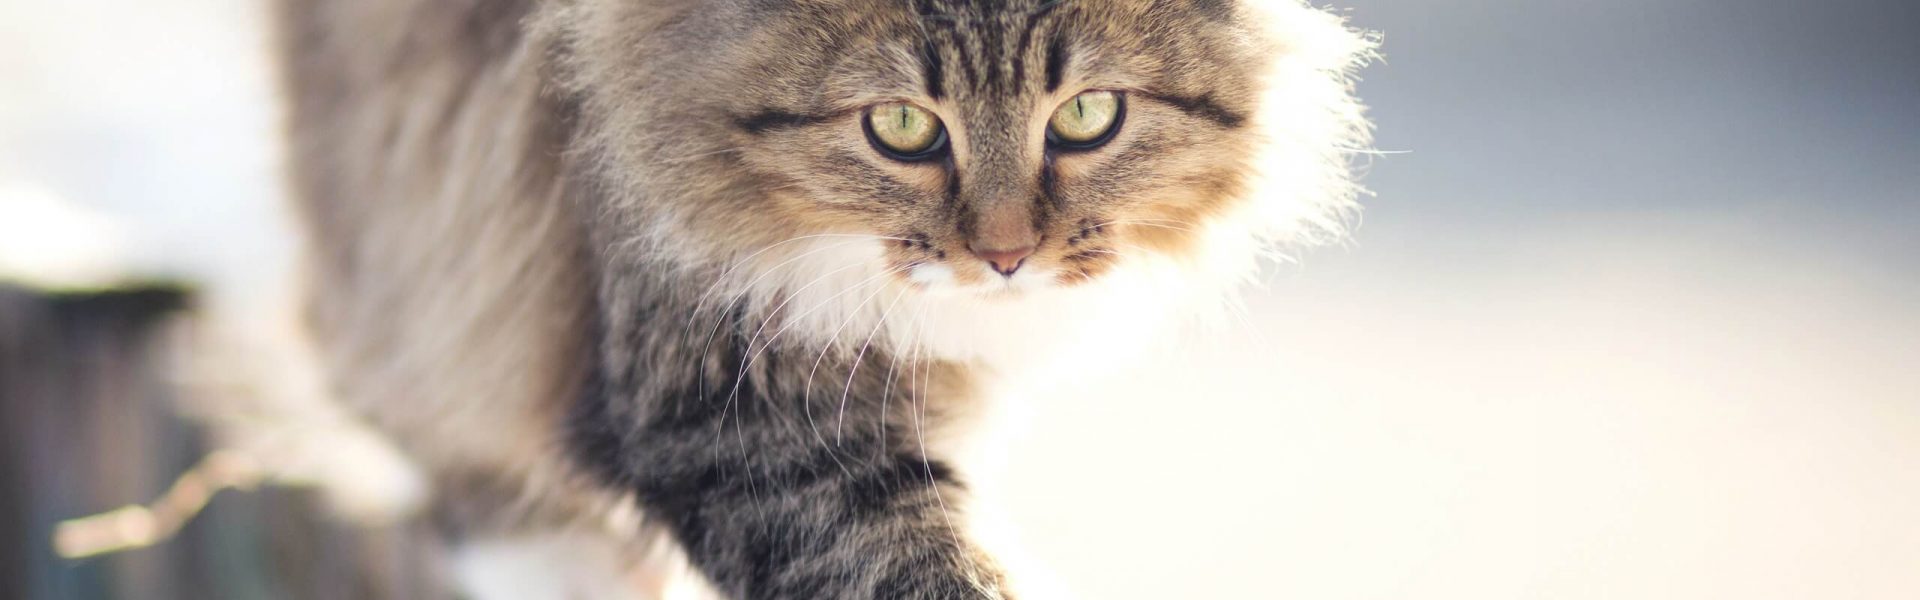 Roaming cat or house cat? | Cat's Best